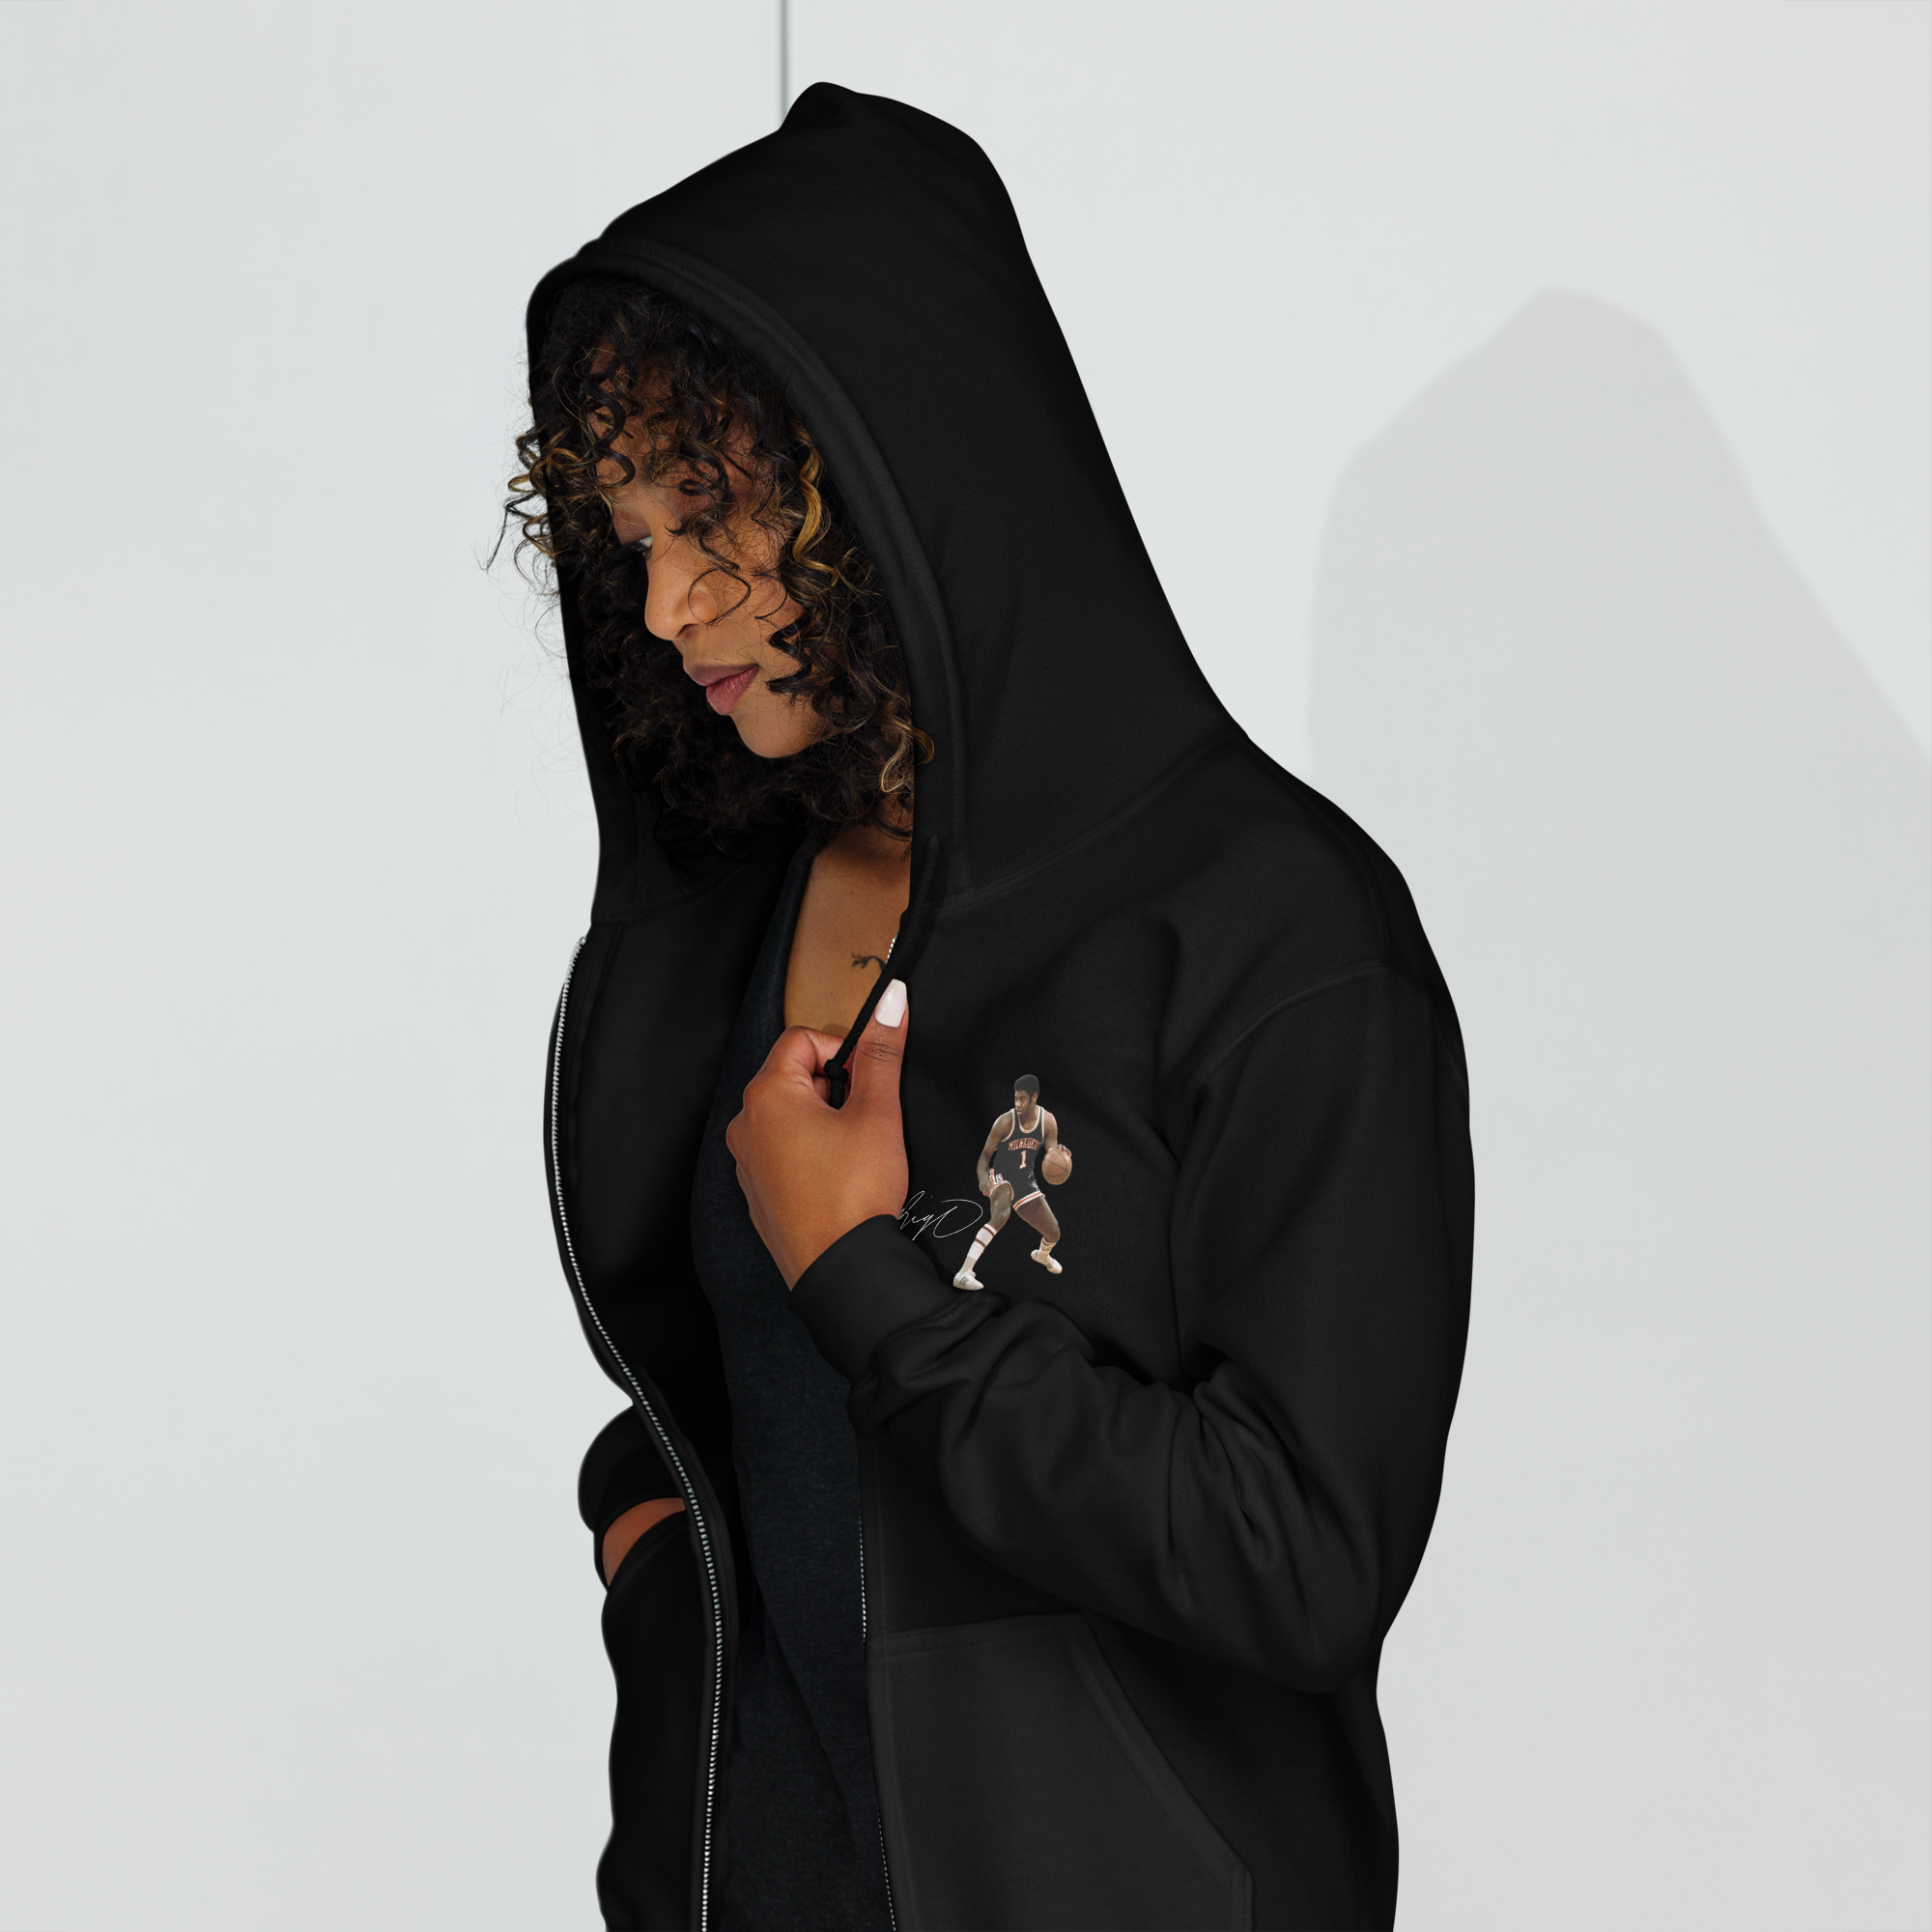 Big O - Unisex heavy blend zip hoodie